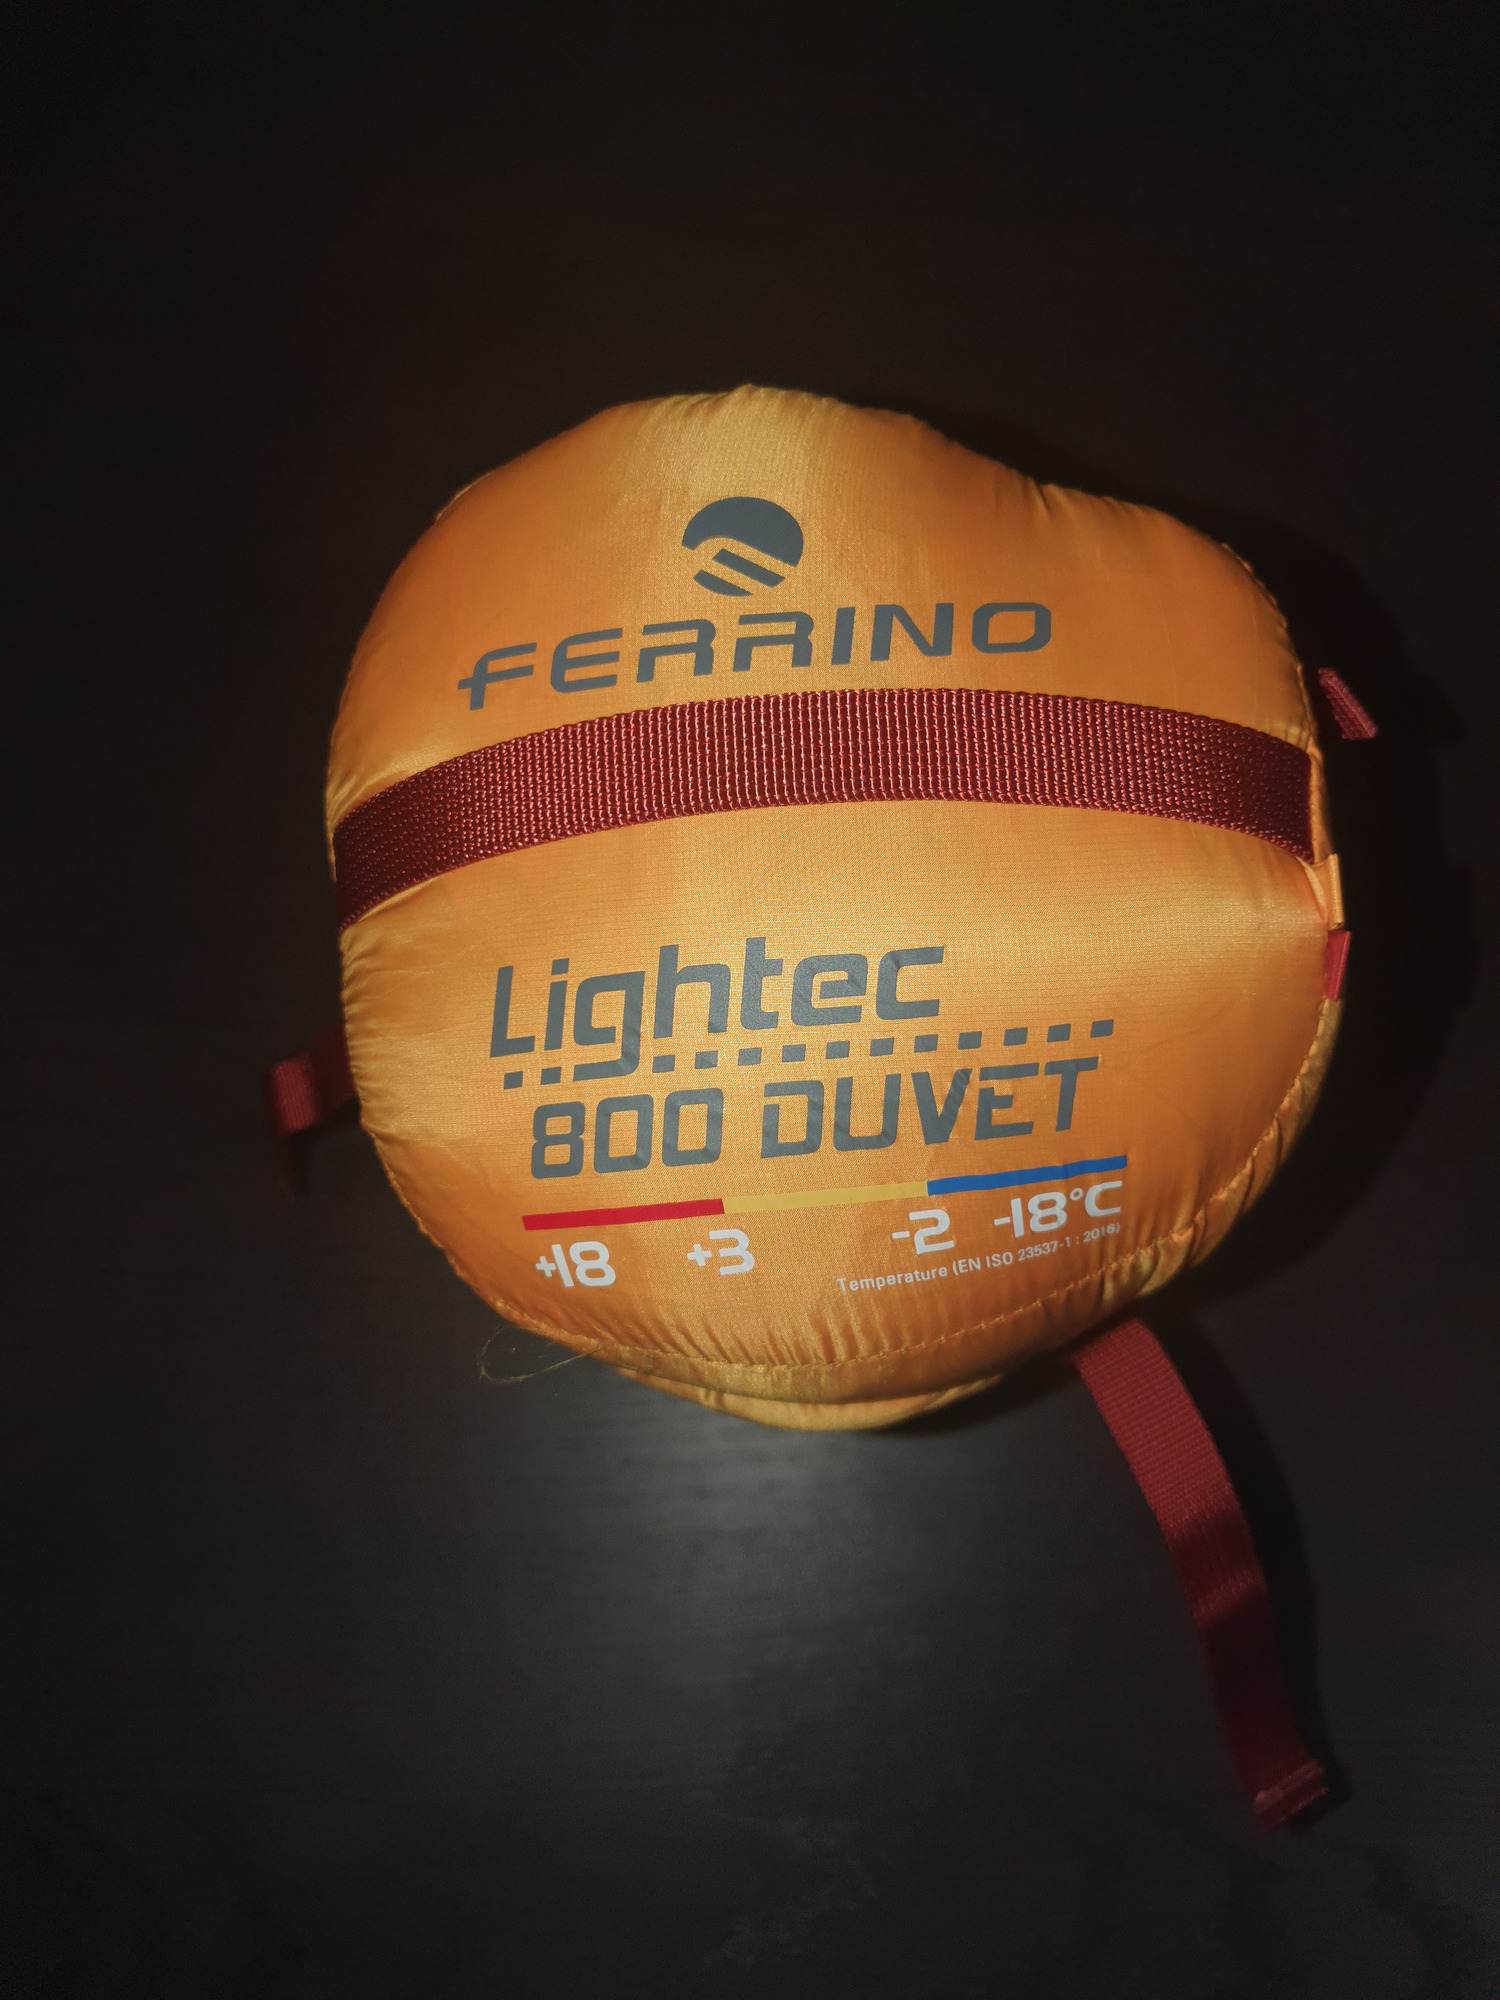 Ferrino Lightec 800